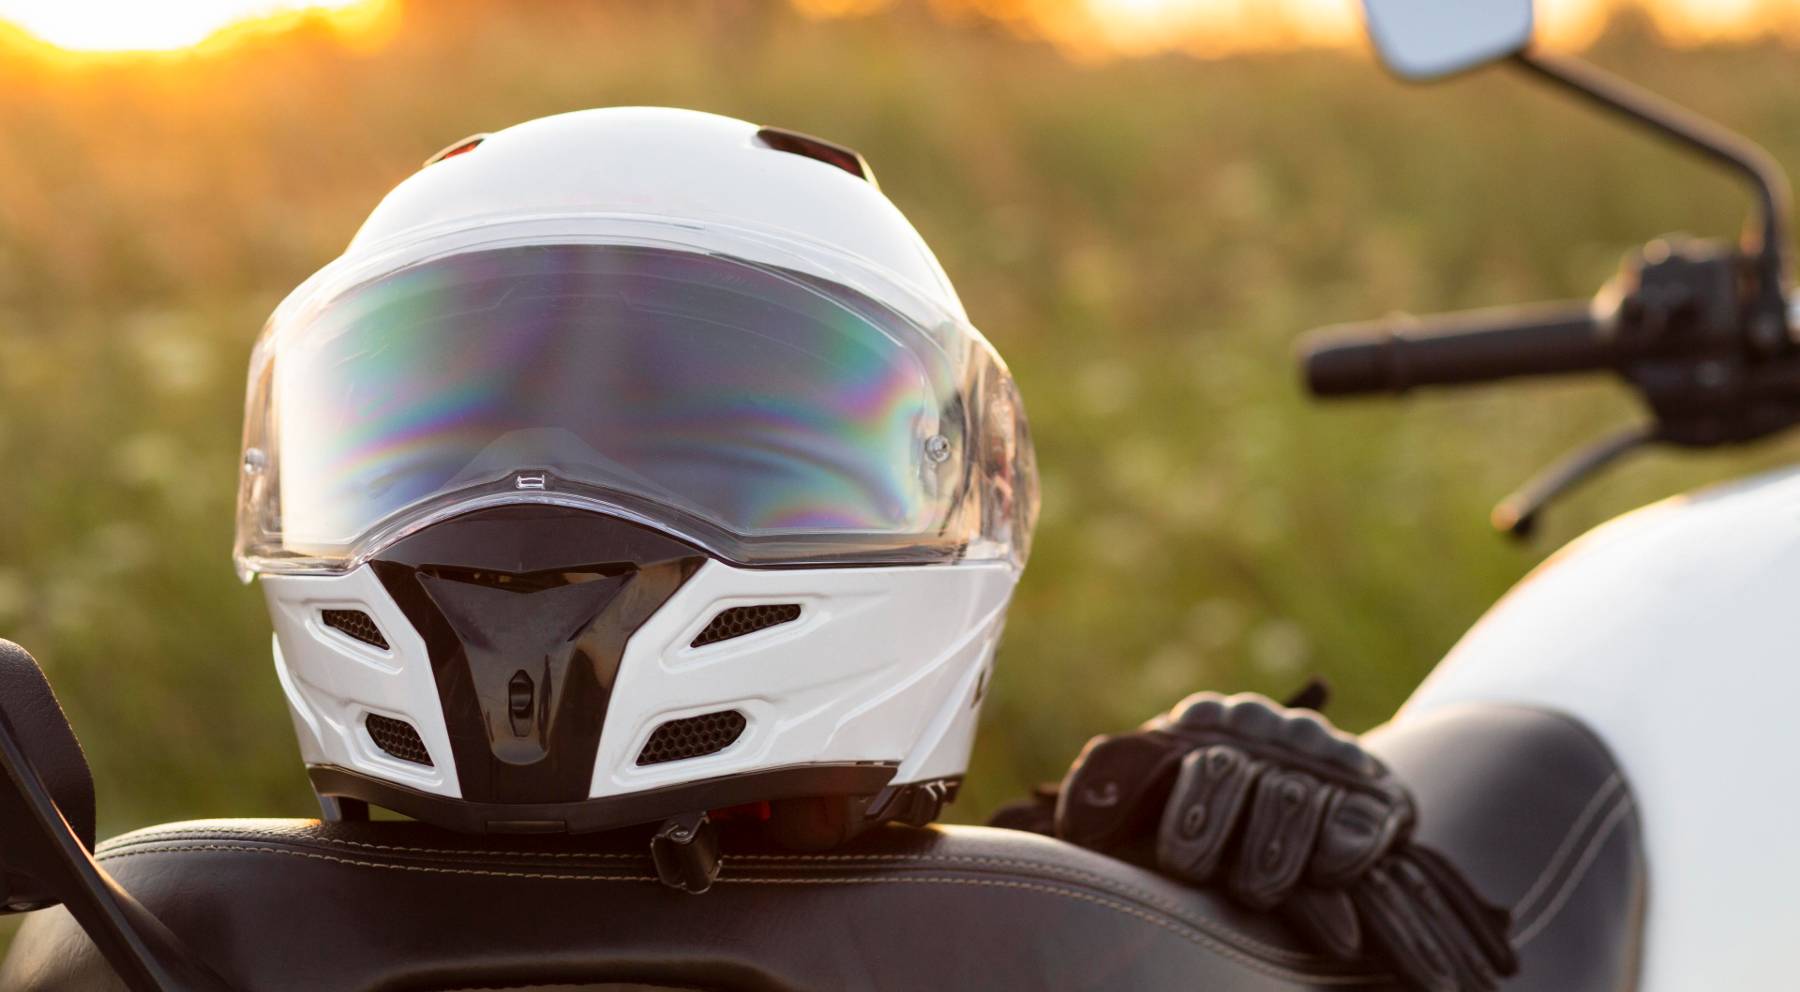 Dental Críticamente Velocidad supersónica Cómo son los nuevos cascos de moto que exige la UE